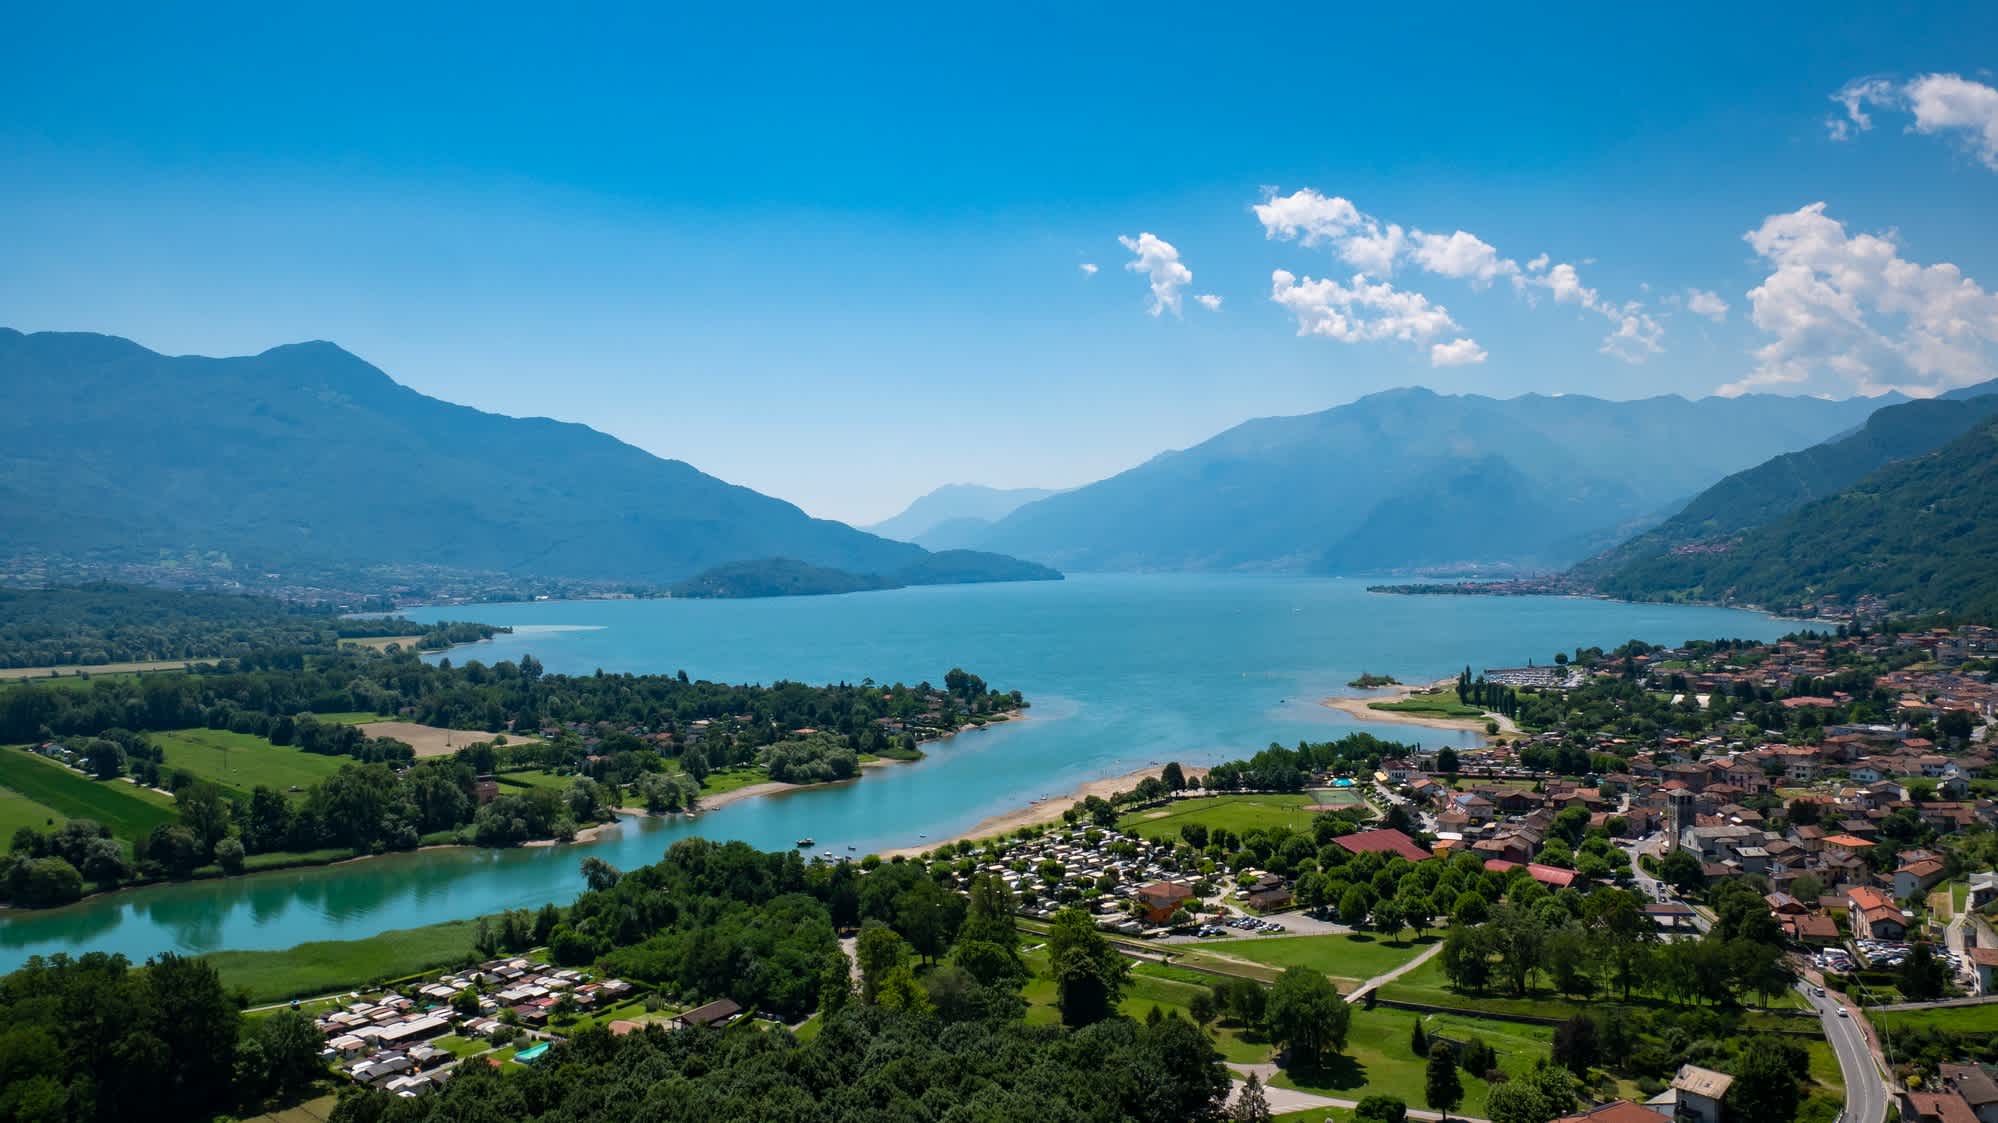 Paysage du lac de Côme depuis le village de Sorico, en Lombardie, en Italie.

